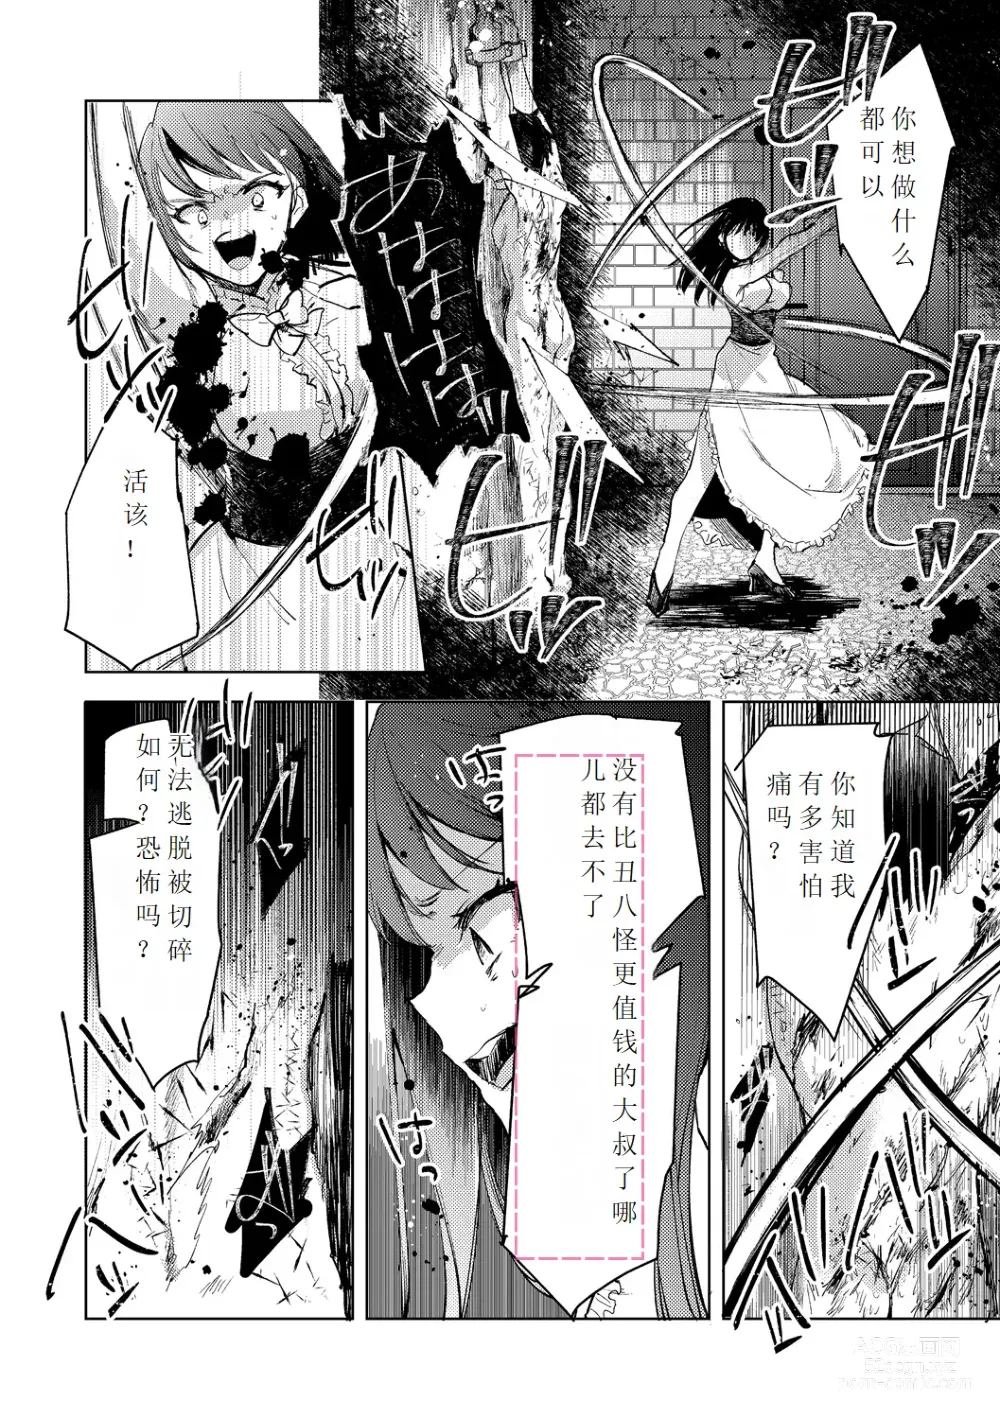 Page 34 of manga Tensei shitara Daruma Joshi ni Sareta Usotsuki Bitch.